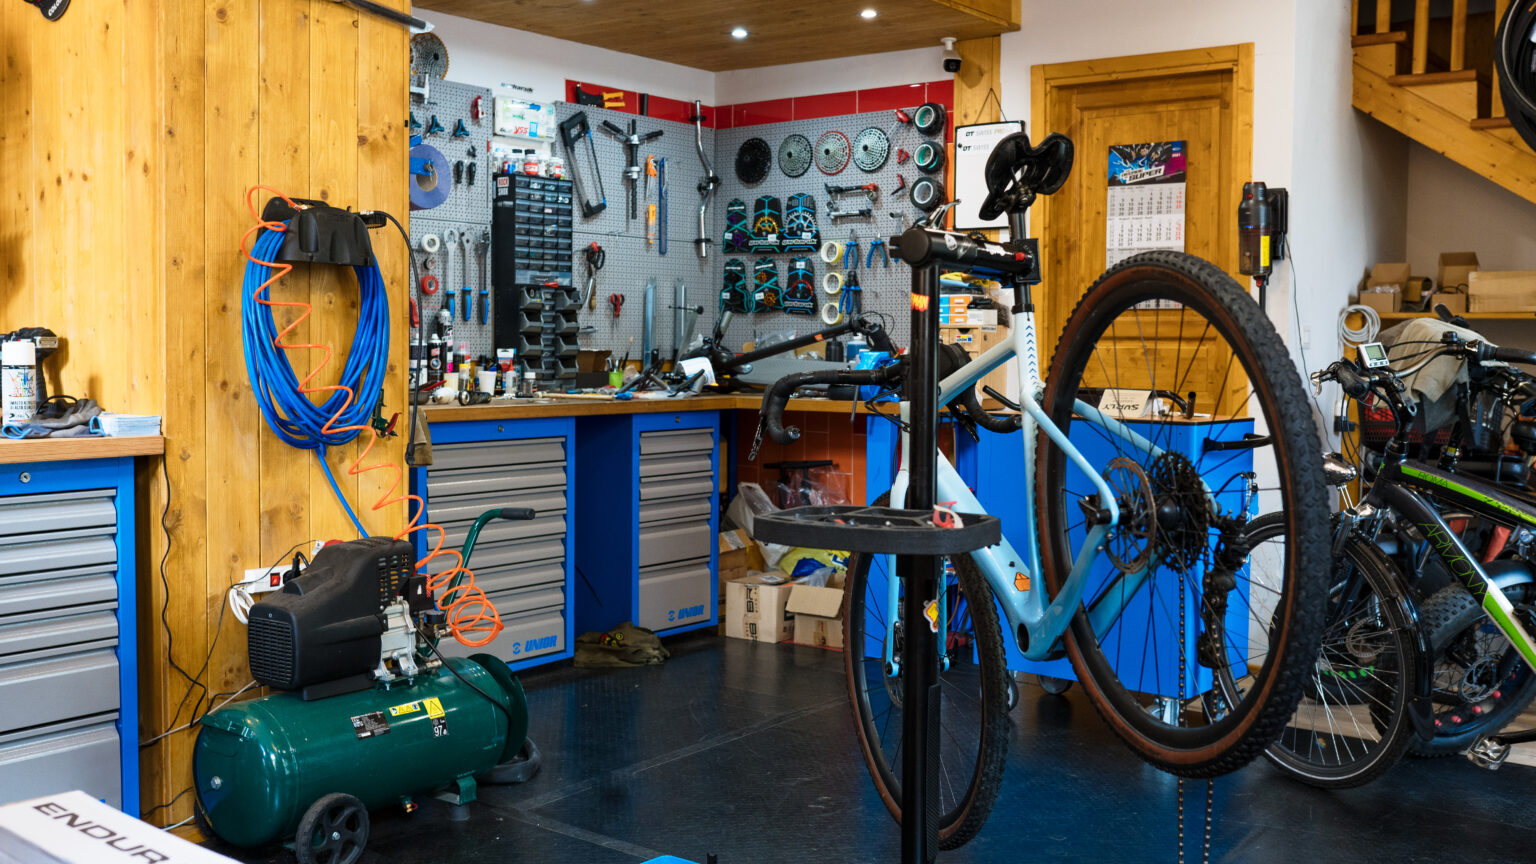 Aprire un negozio di biciclette